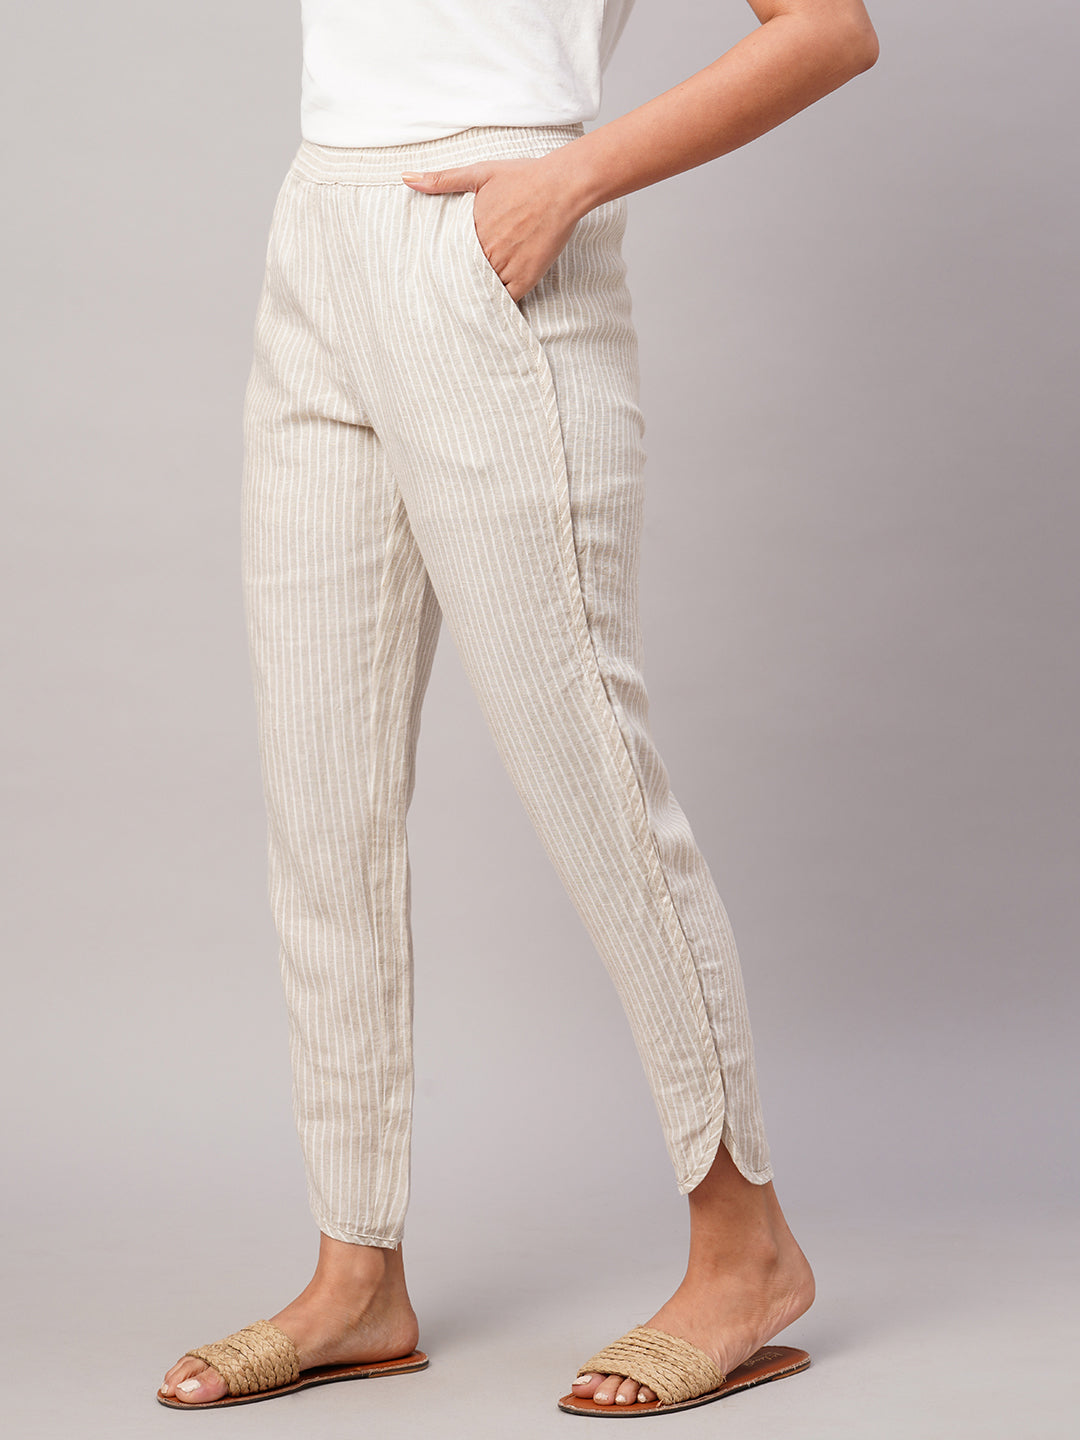 Buy Marks  Spencer Womens Slim Linen Trousers 4579White10 at Amazonin